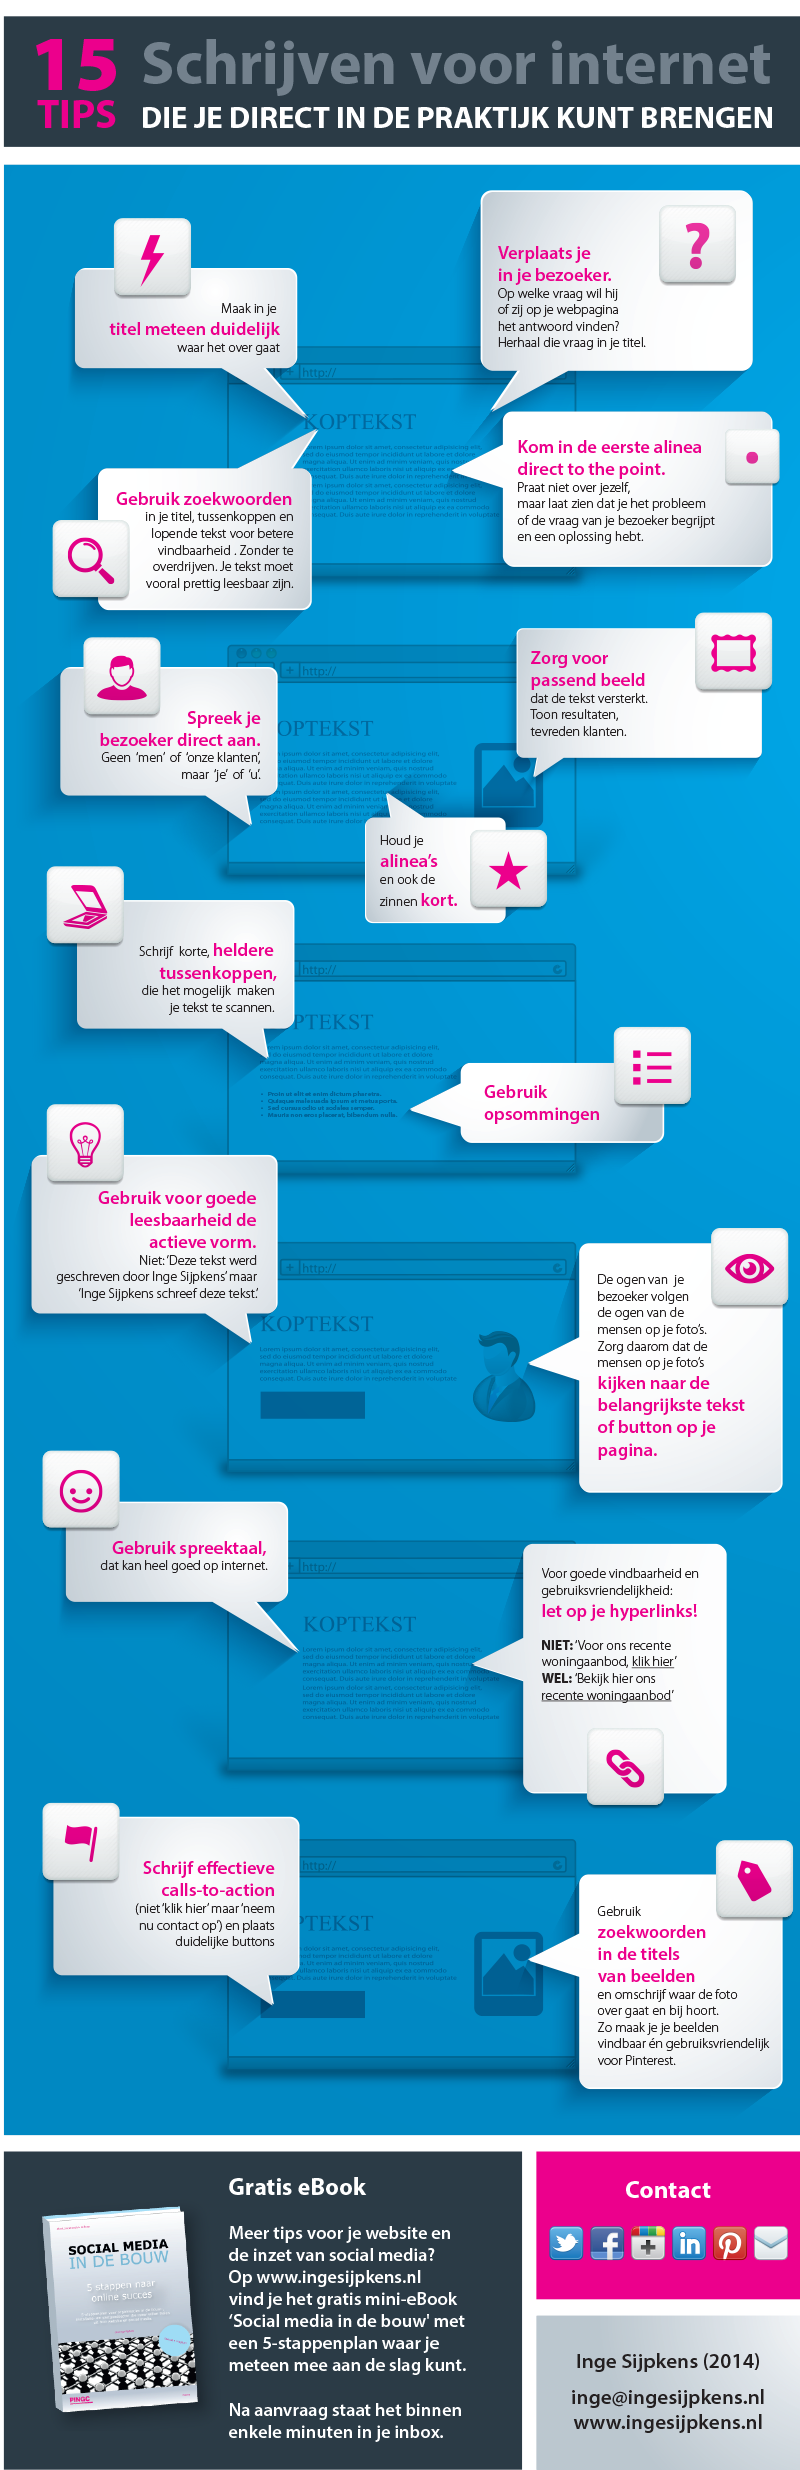 Schrijven voor internet | 15 tips die je direct in de praktijk kunt brengen [infographic]